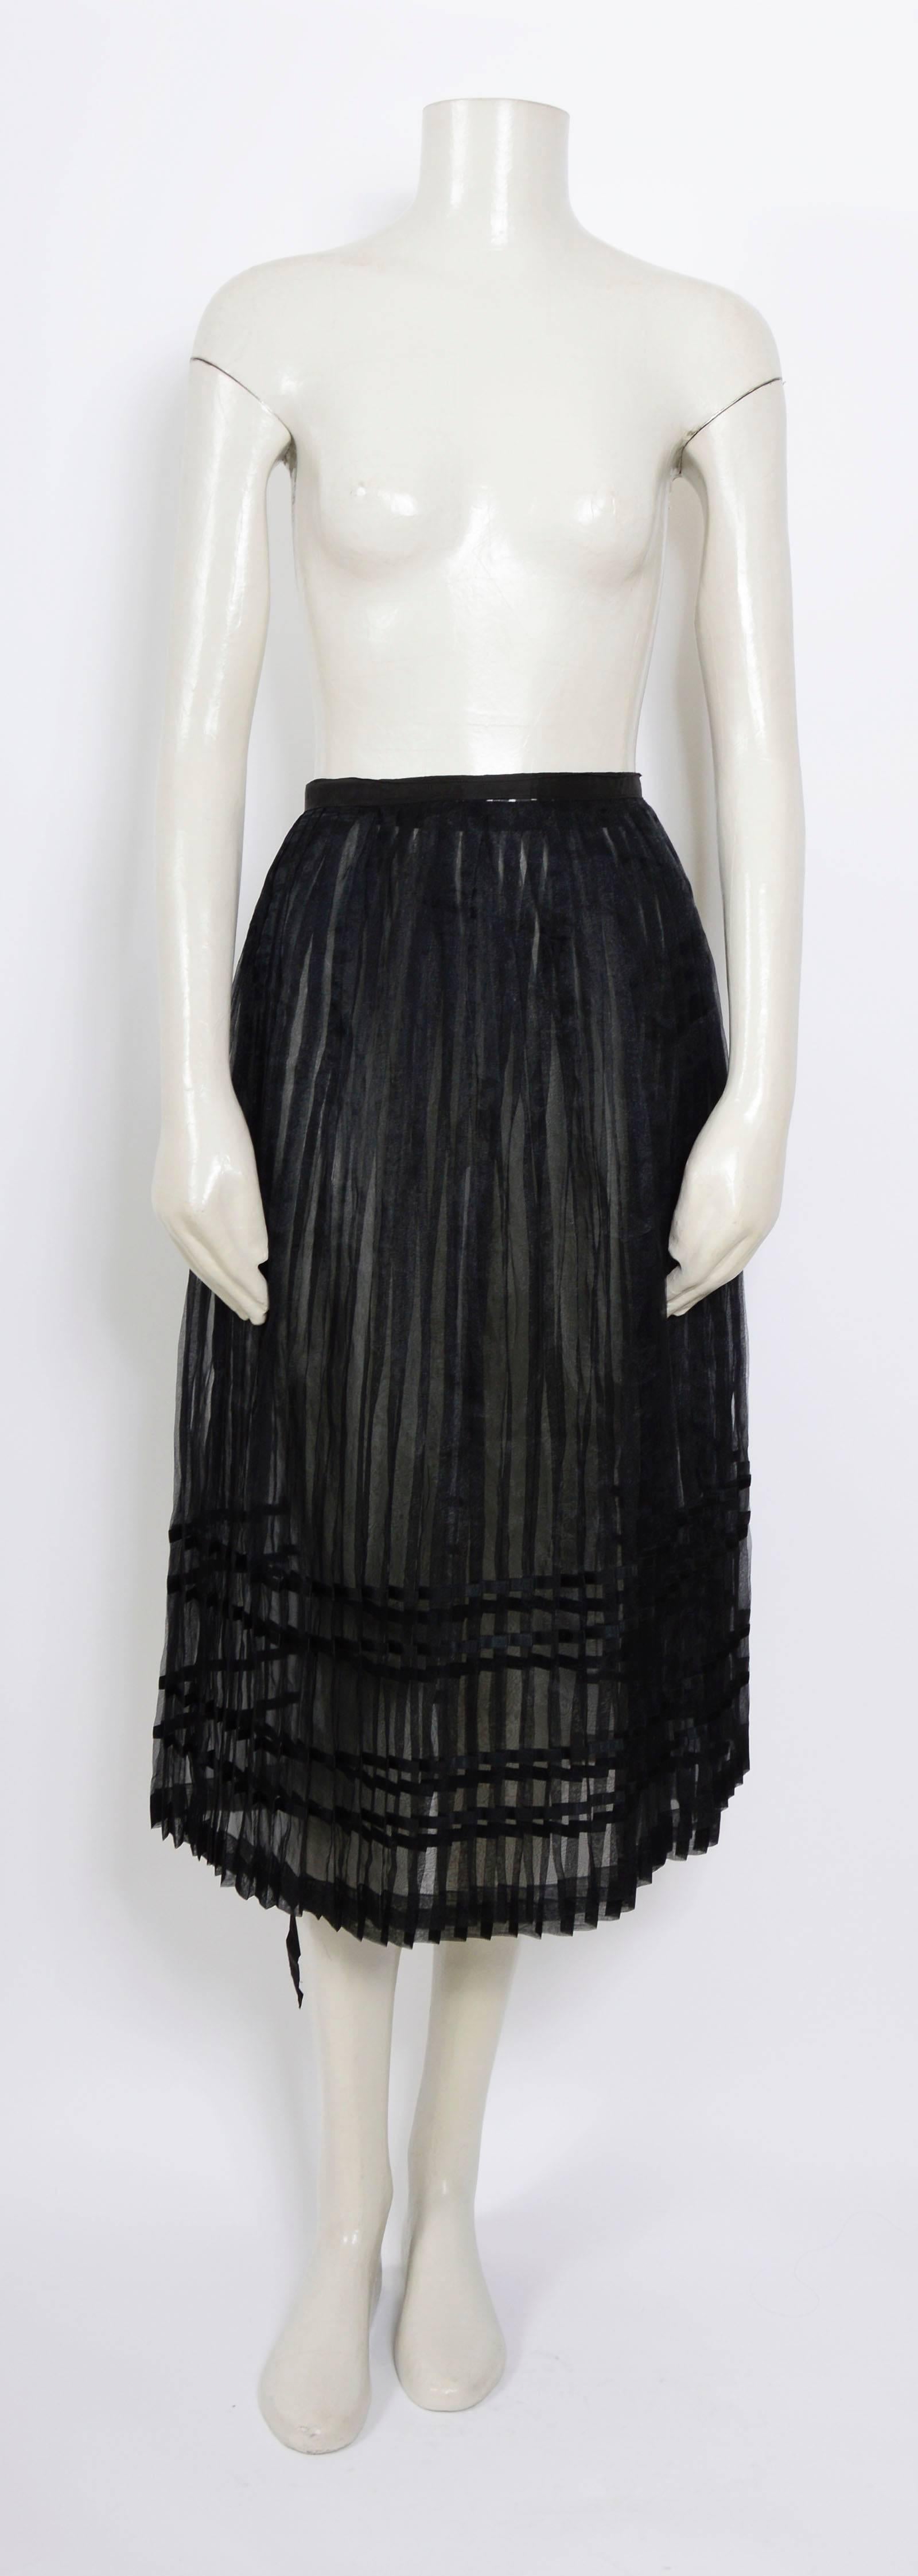 Yamamoto Pour La Nuit 90's Black Pleated Transparent wrap skirt.
Size M
Total Length 30inch/76cm